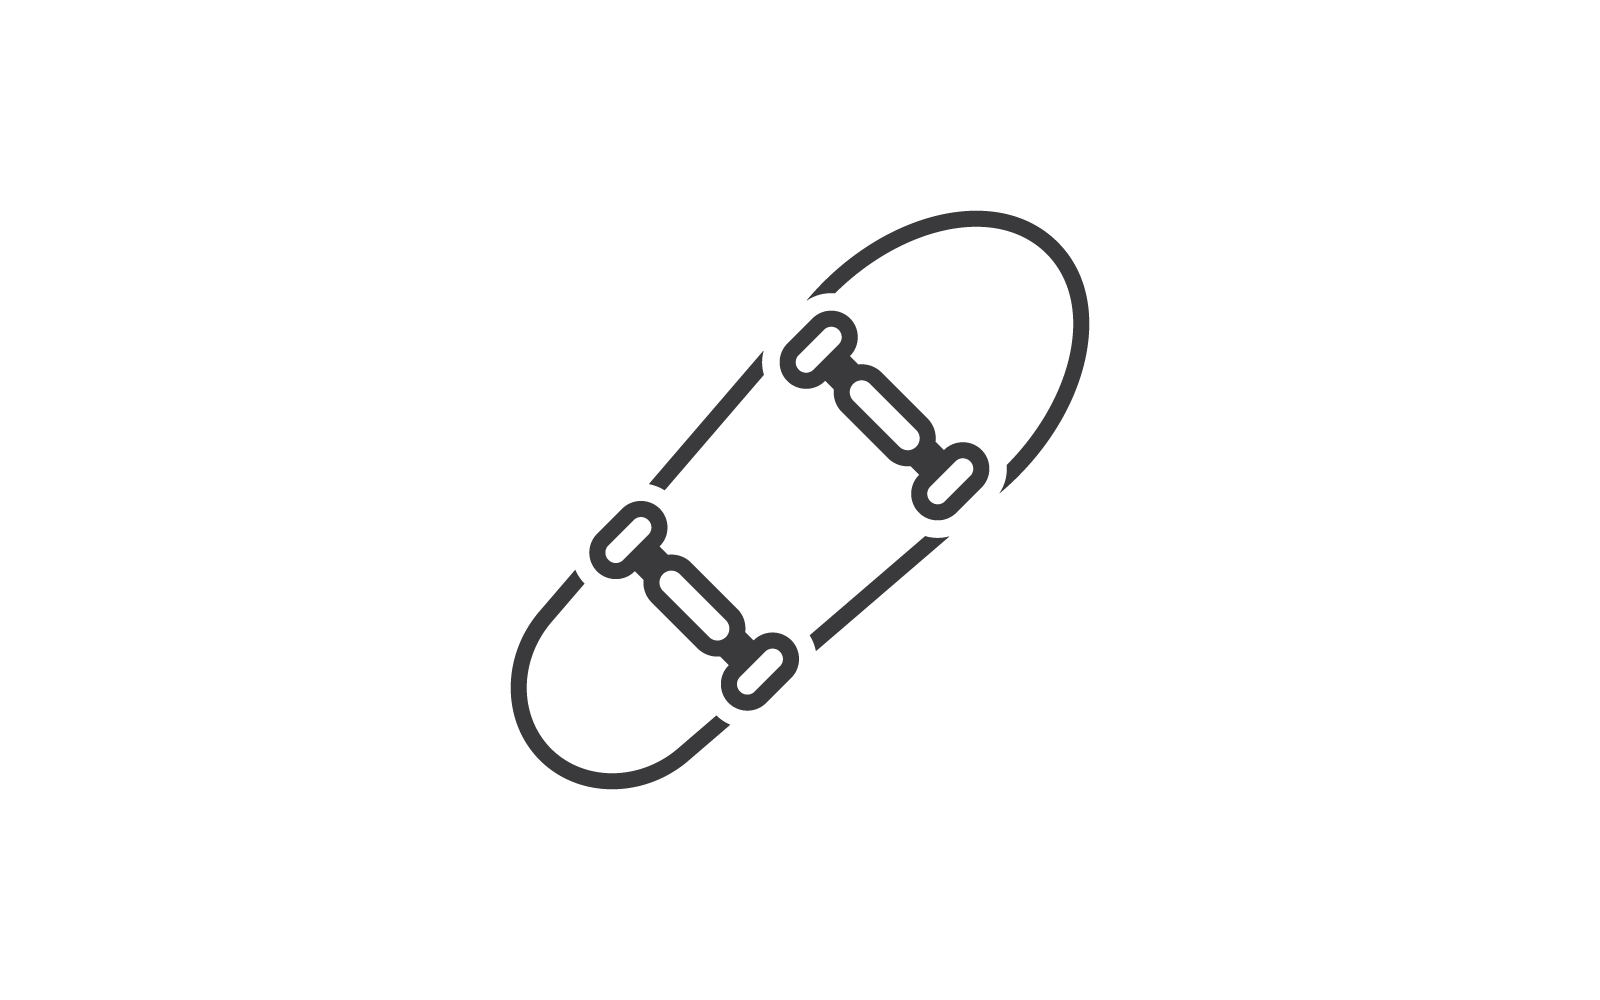 Flaches Design des Skateboardikonen-Illustrationsvektors ist das Logo und die Ikone für Sportskaterunterhaltung